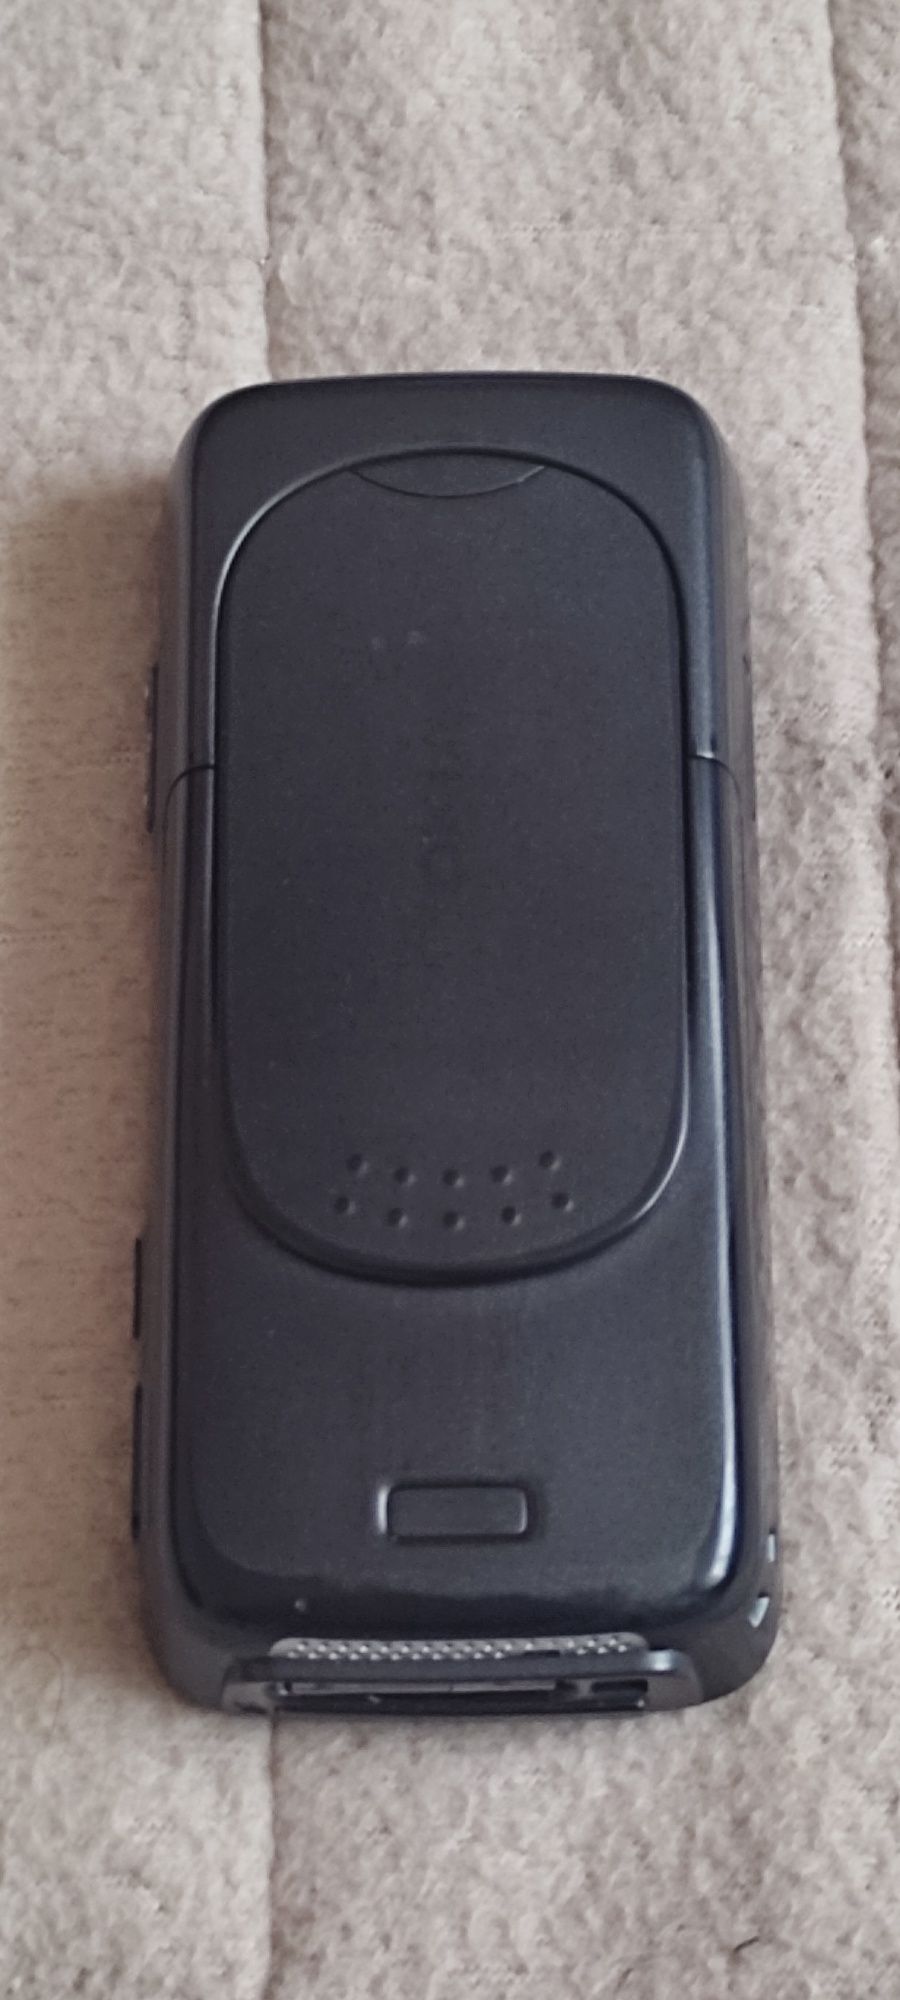 Мобильные телефоны Nokia N 73 МЕ; HERO Н2000+